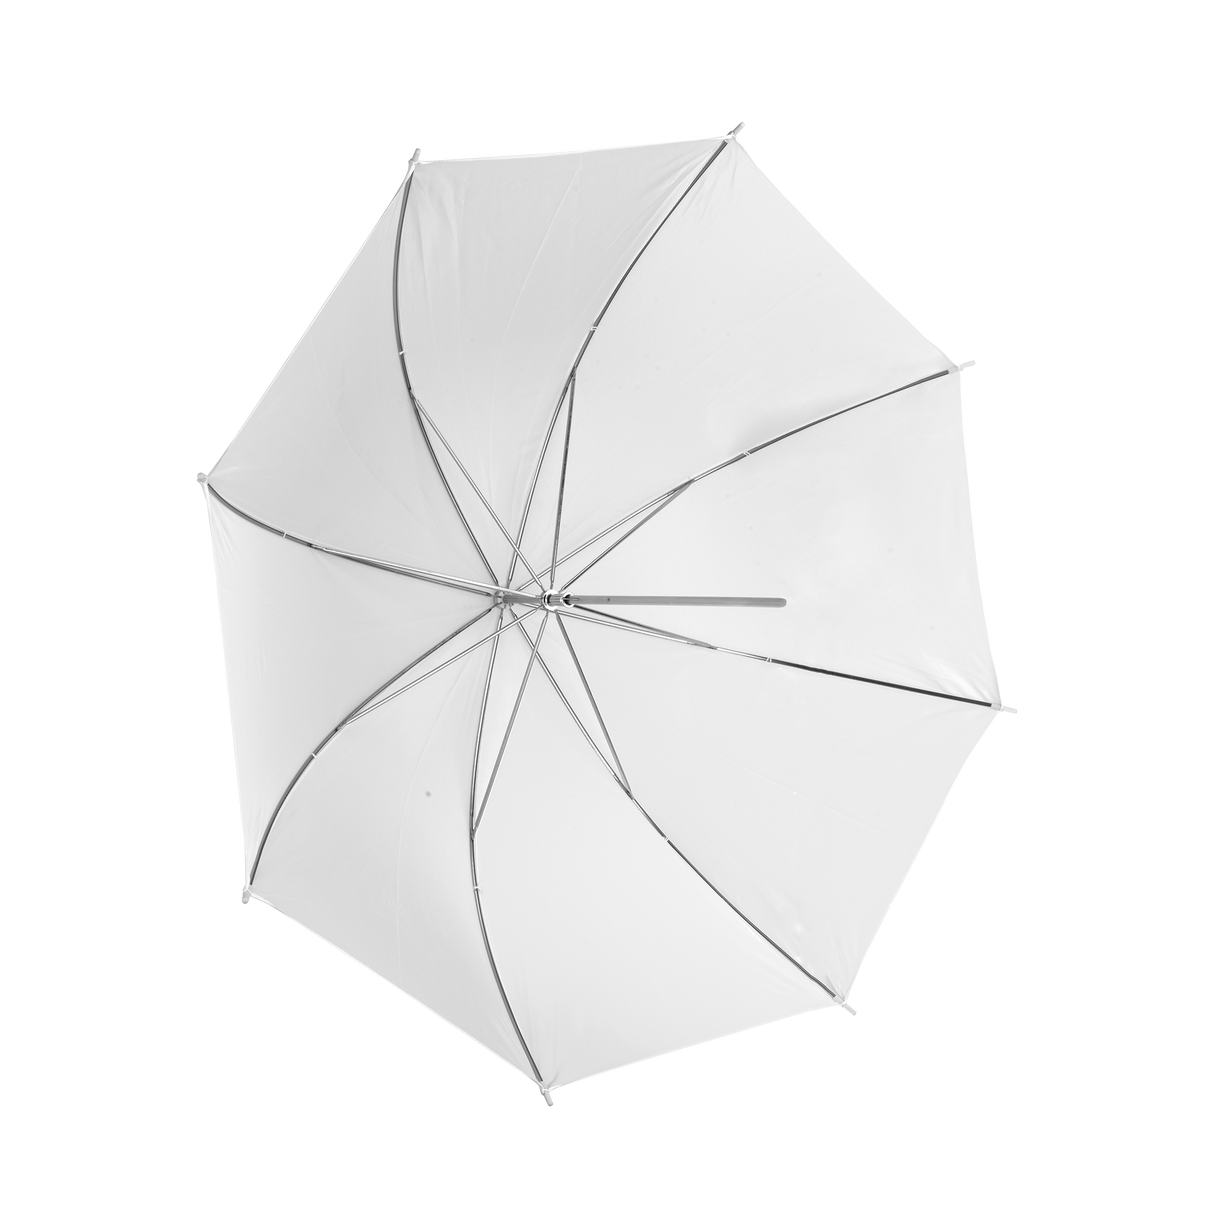 Translucent umbrella white 80 cm